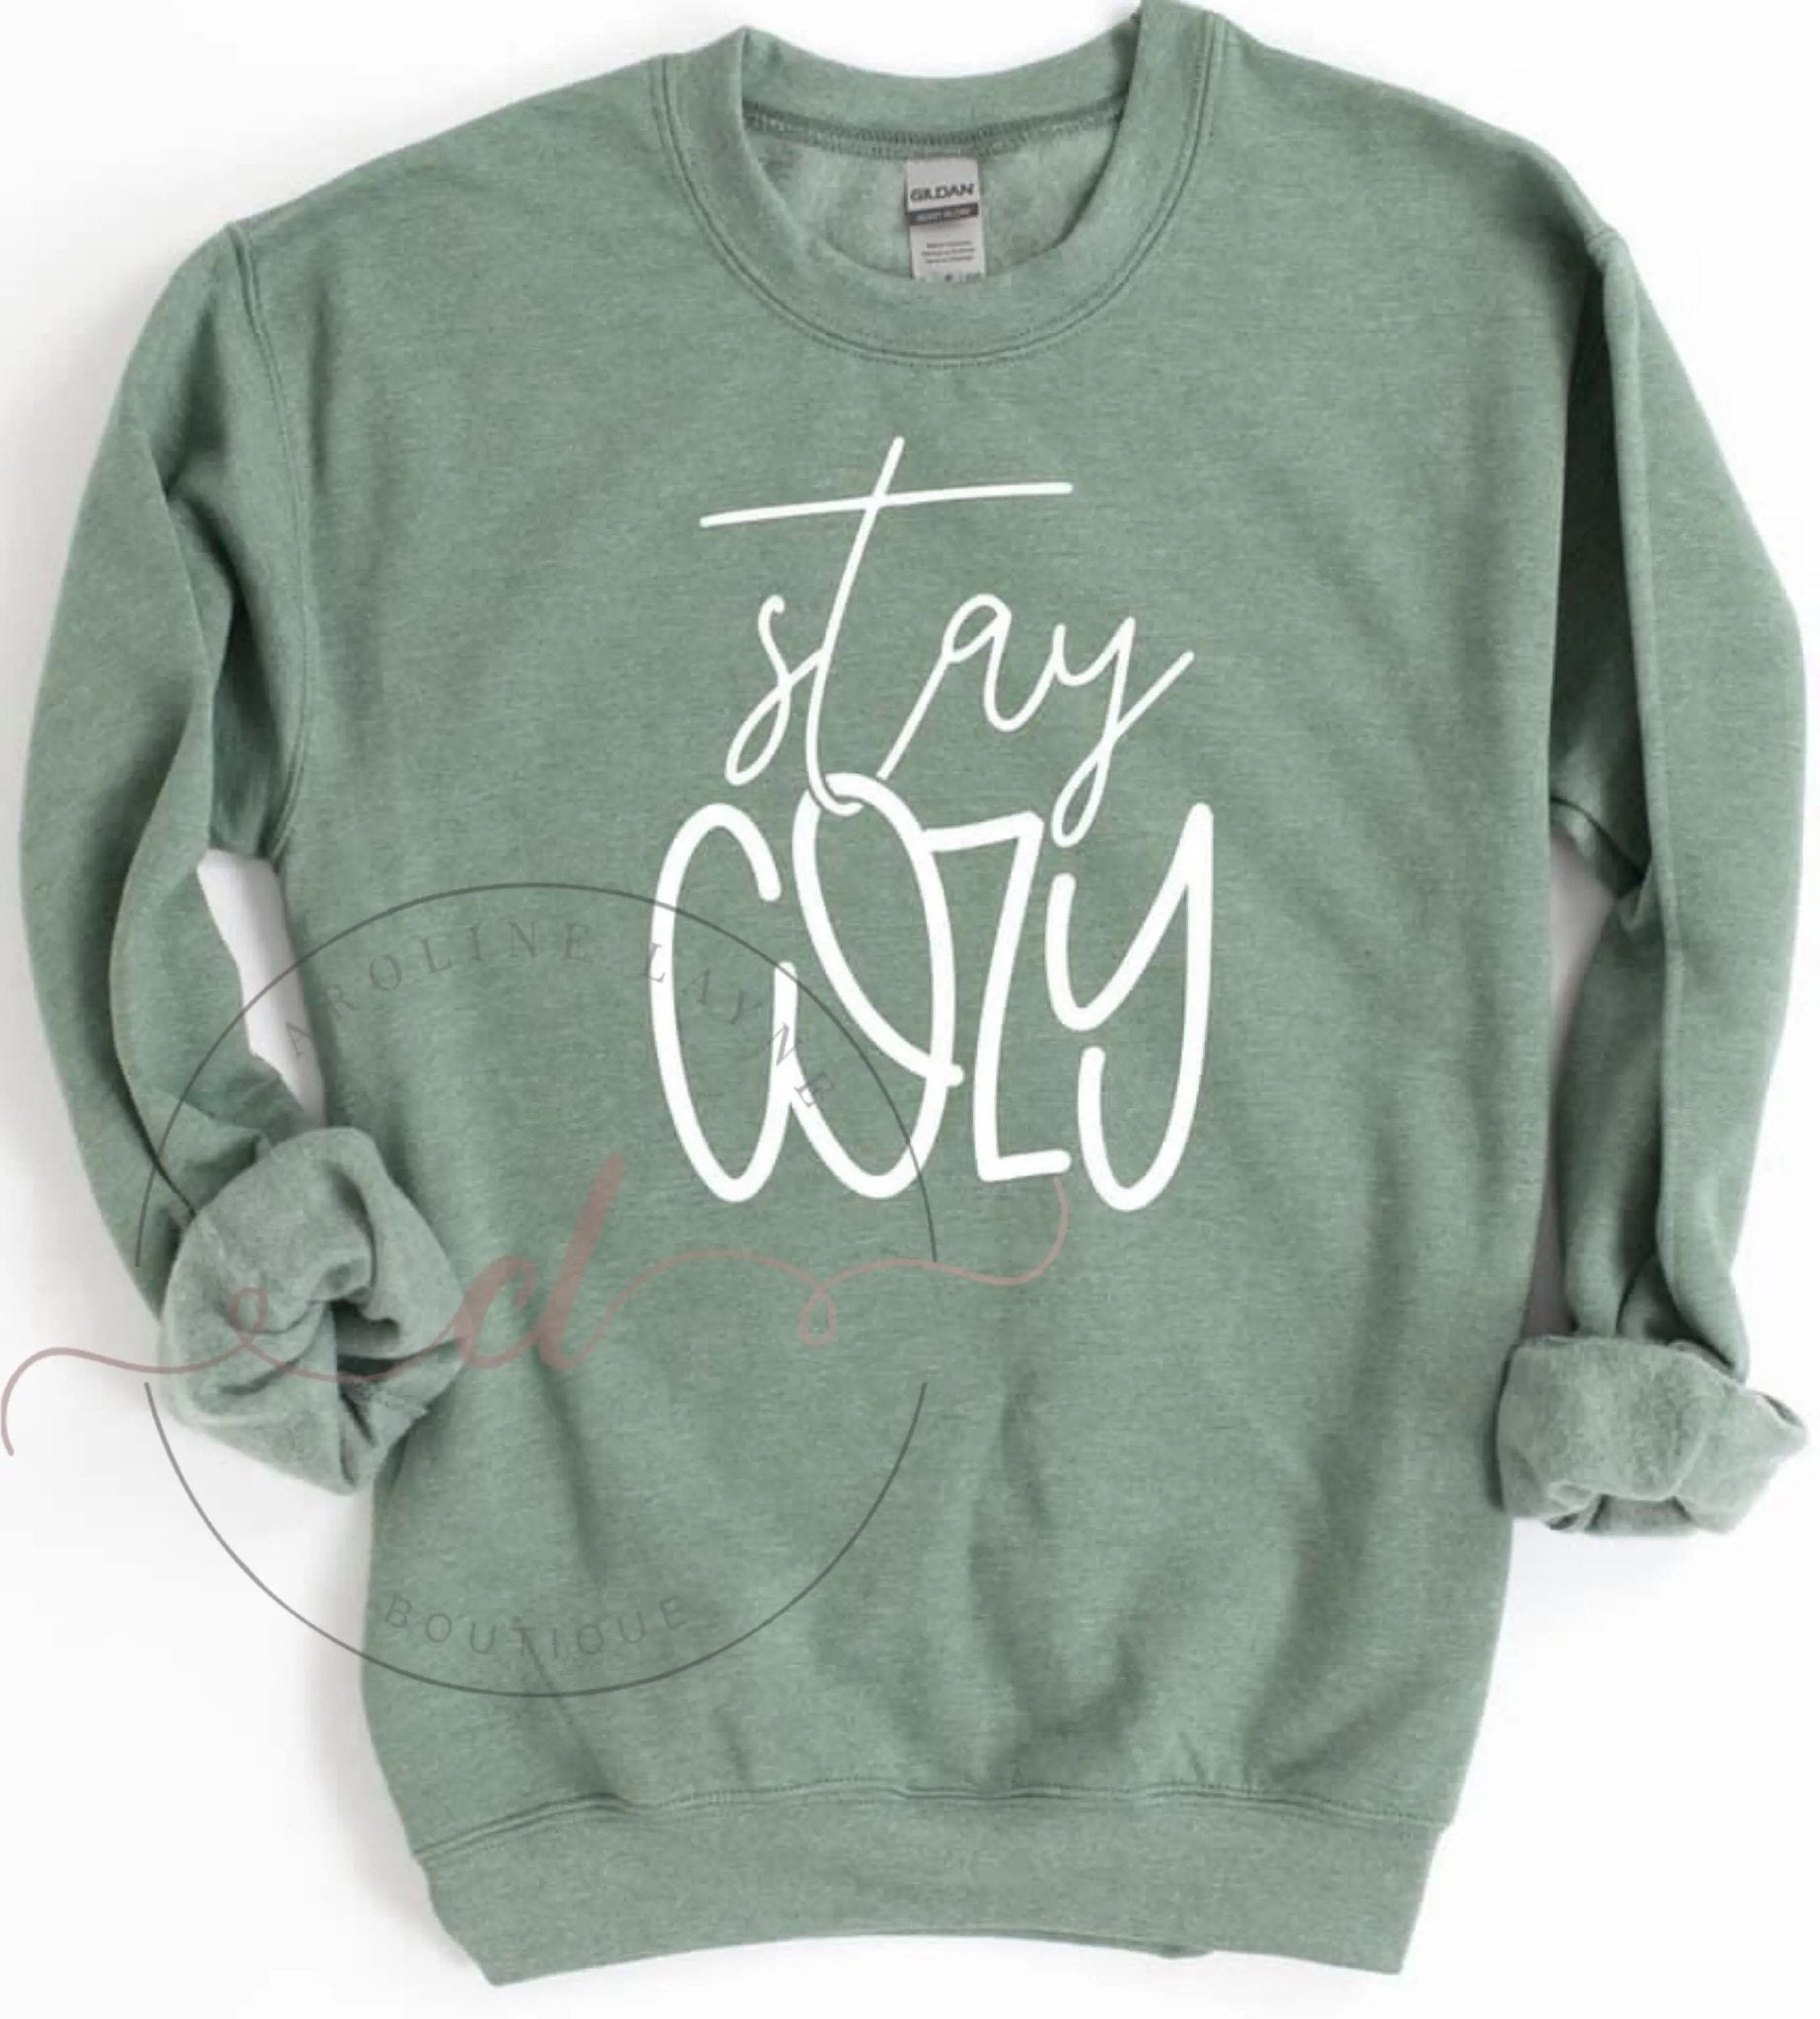 Stay Cozy Sweatshirt - Caroline Layne Boutique LLC